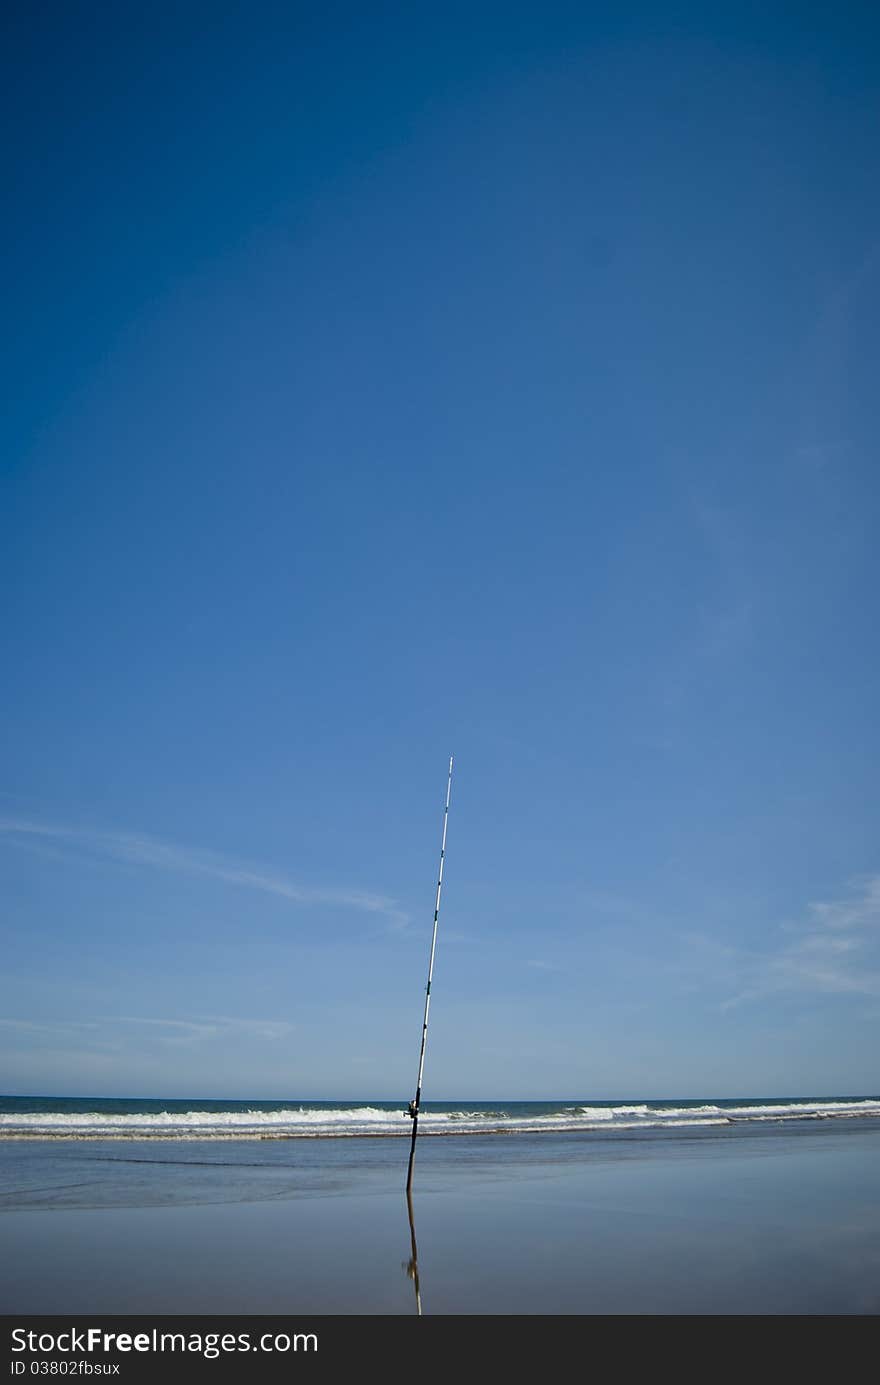 Fishing rod on the beach. Fishing rod on the beach